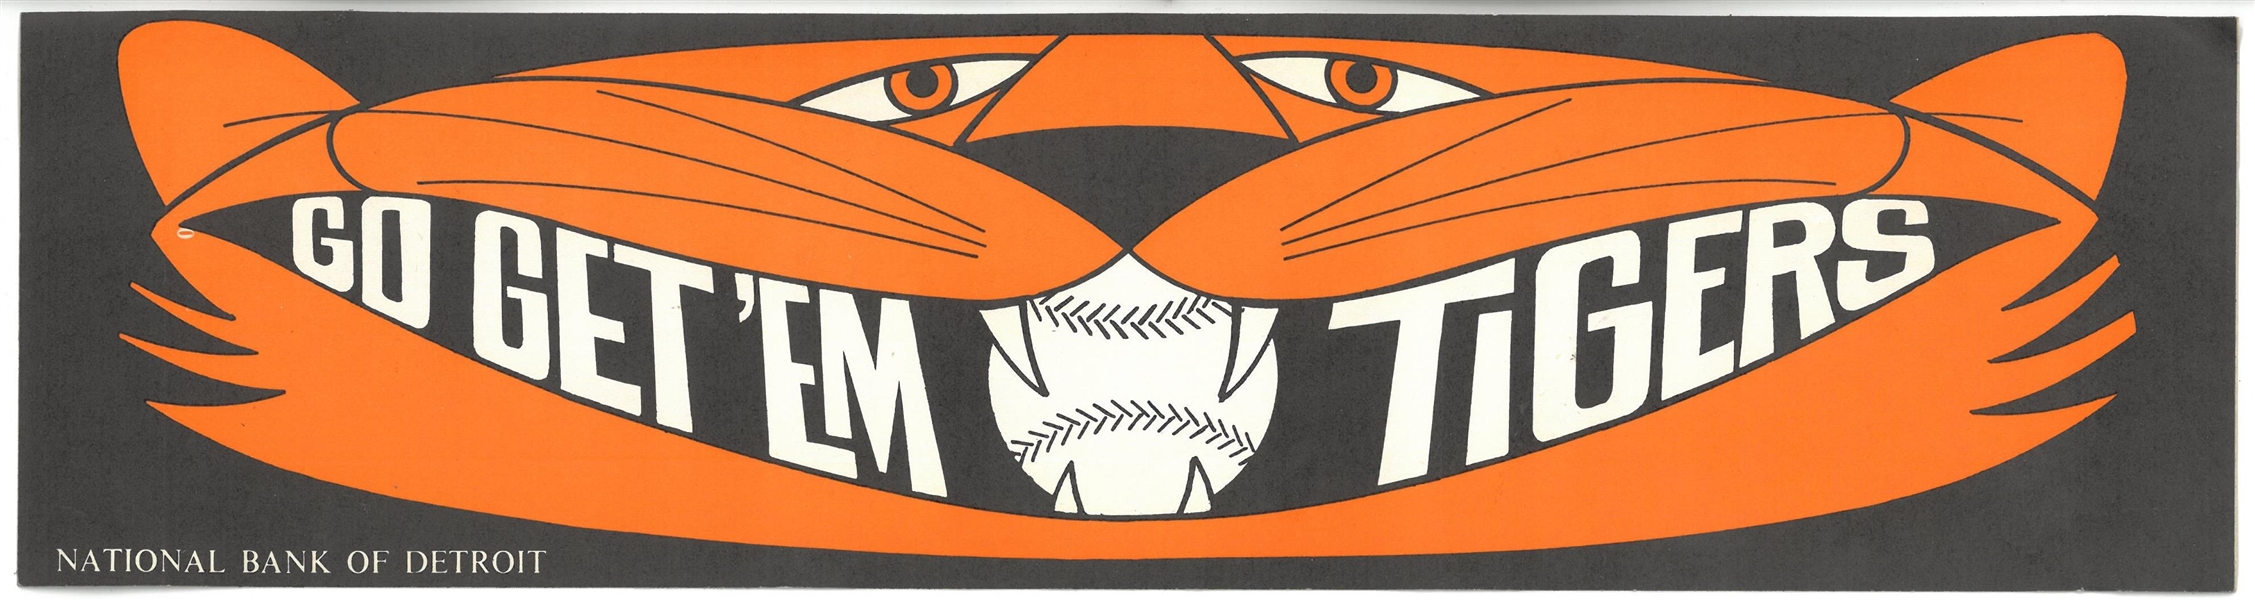 Detroit Tigers Vintage Bumper Sticker - Go Get Em